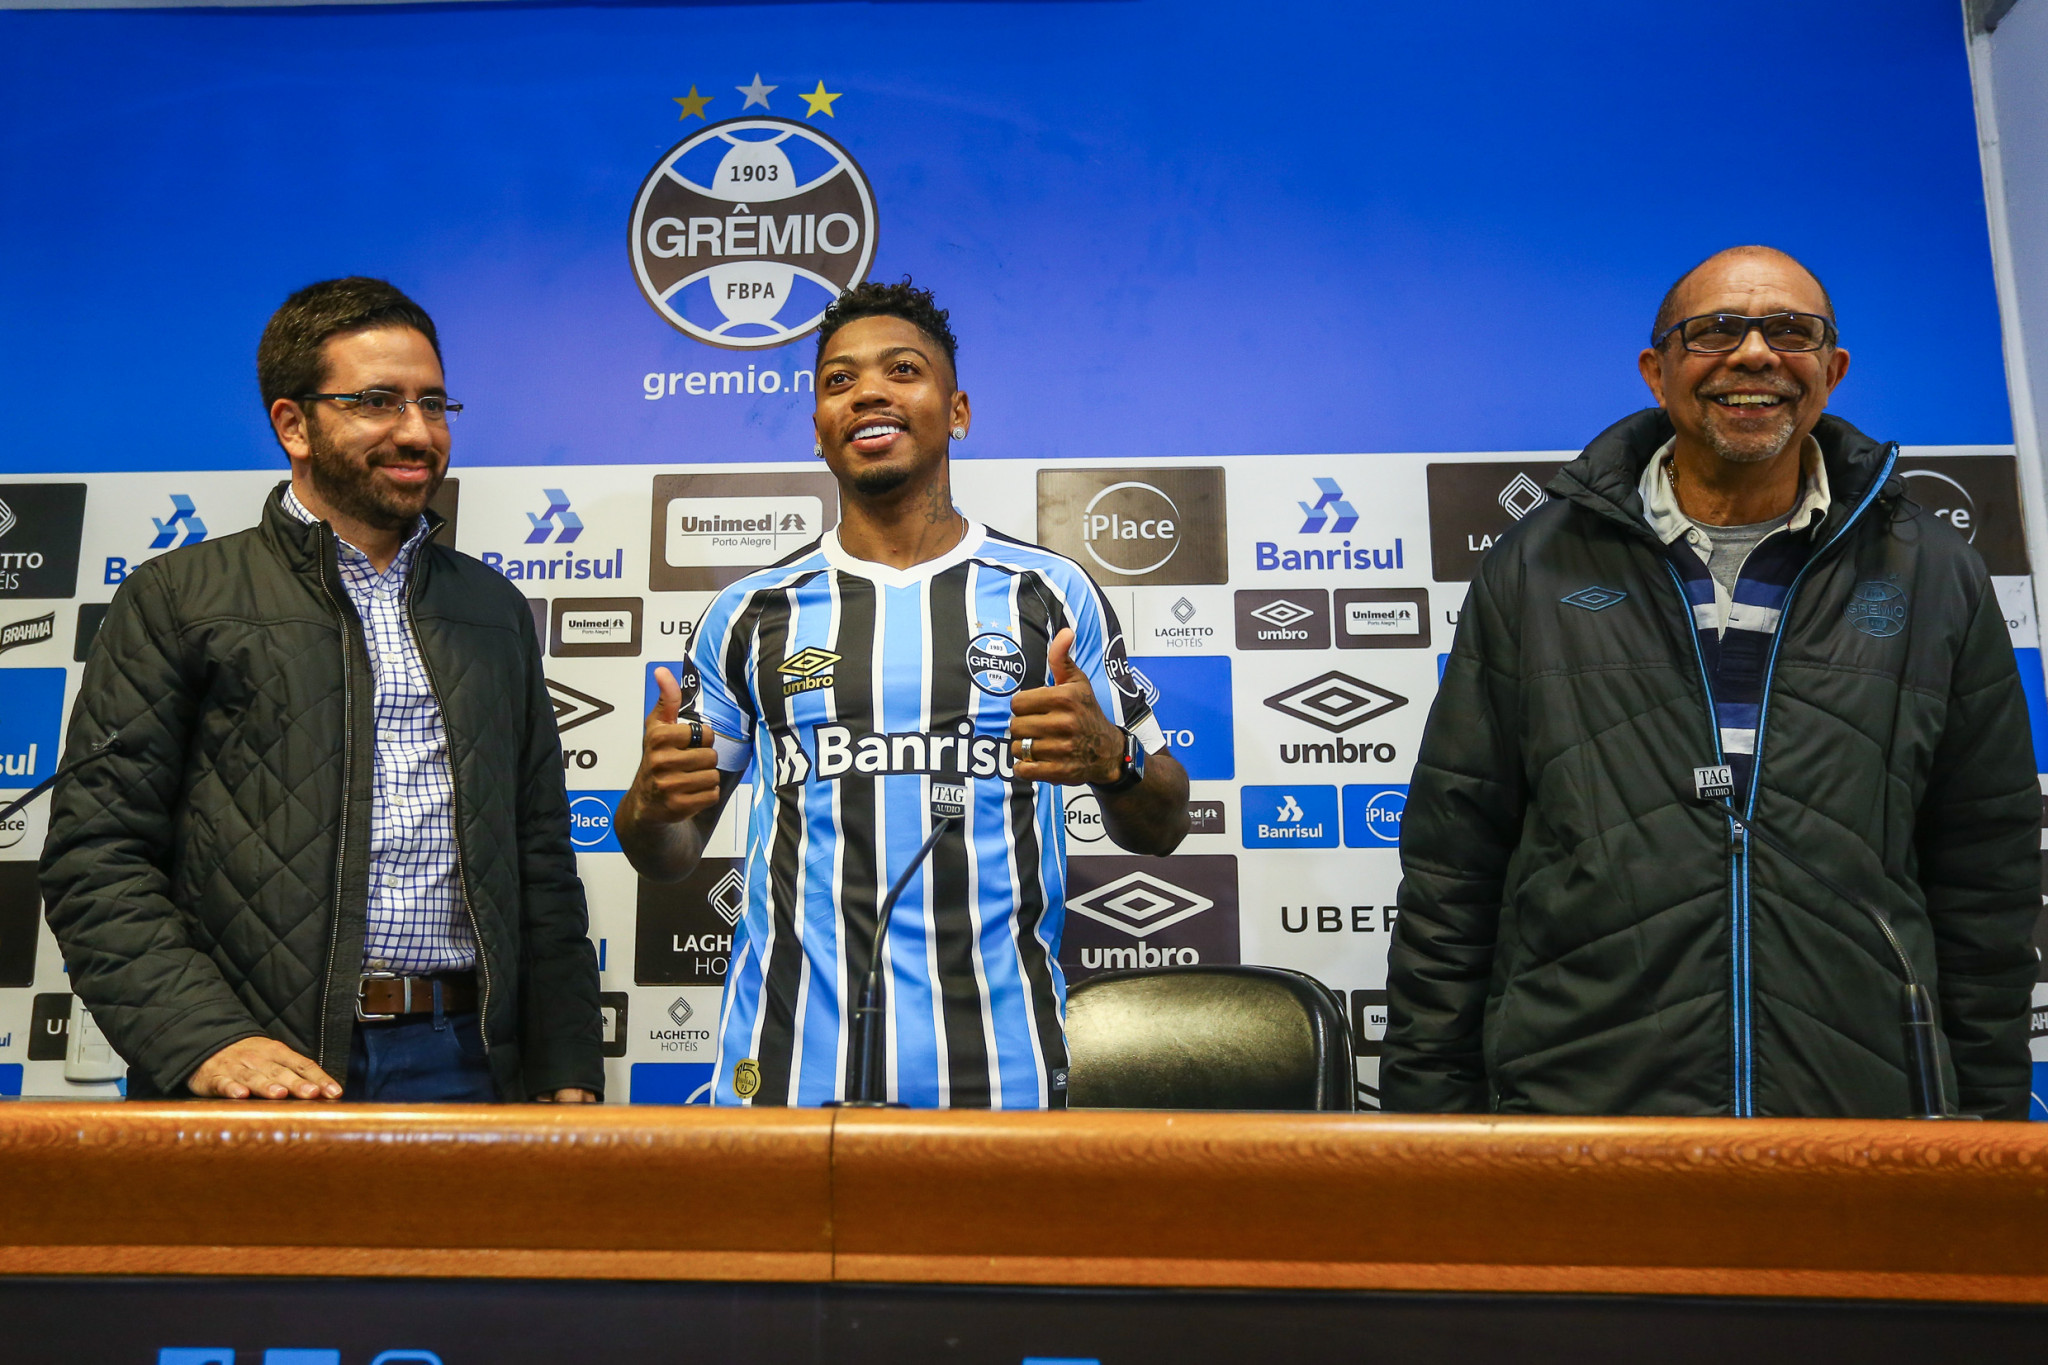 Meia-atacante Marinho é apresentado no Grêmio e fala em ‘conquistar mais títulos’